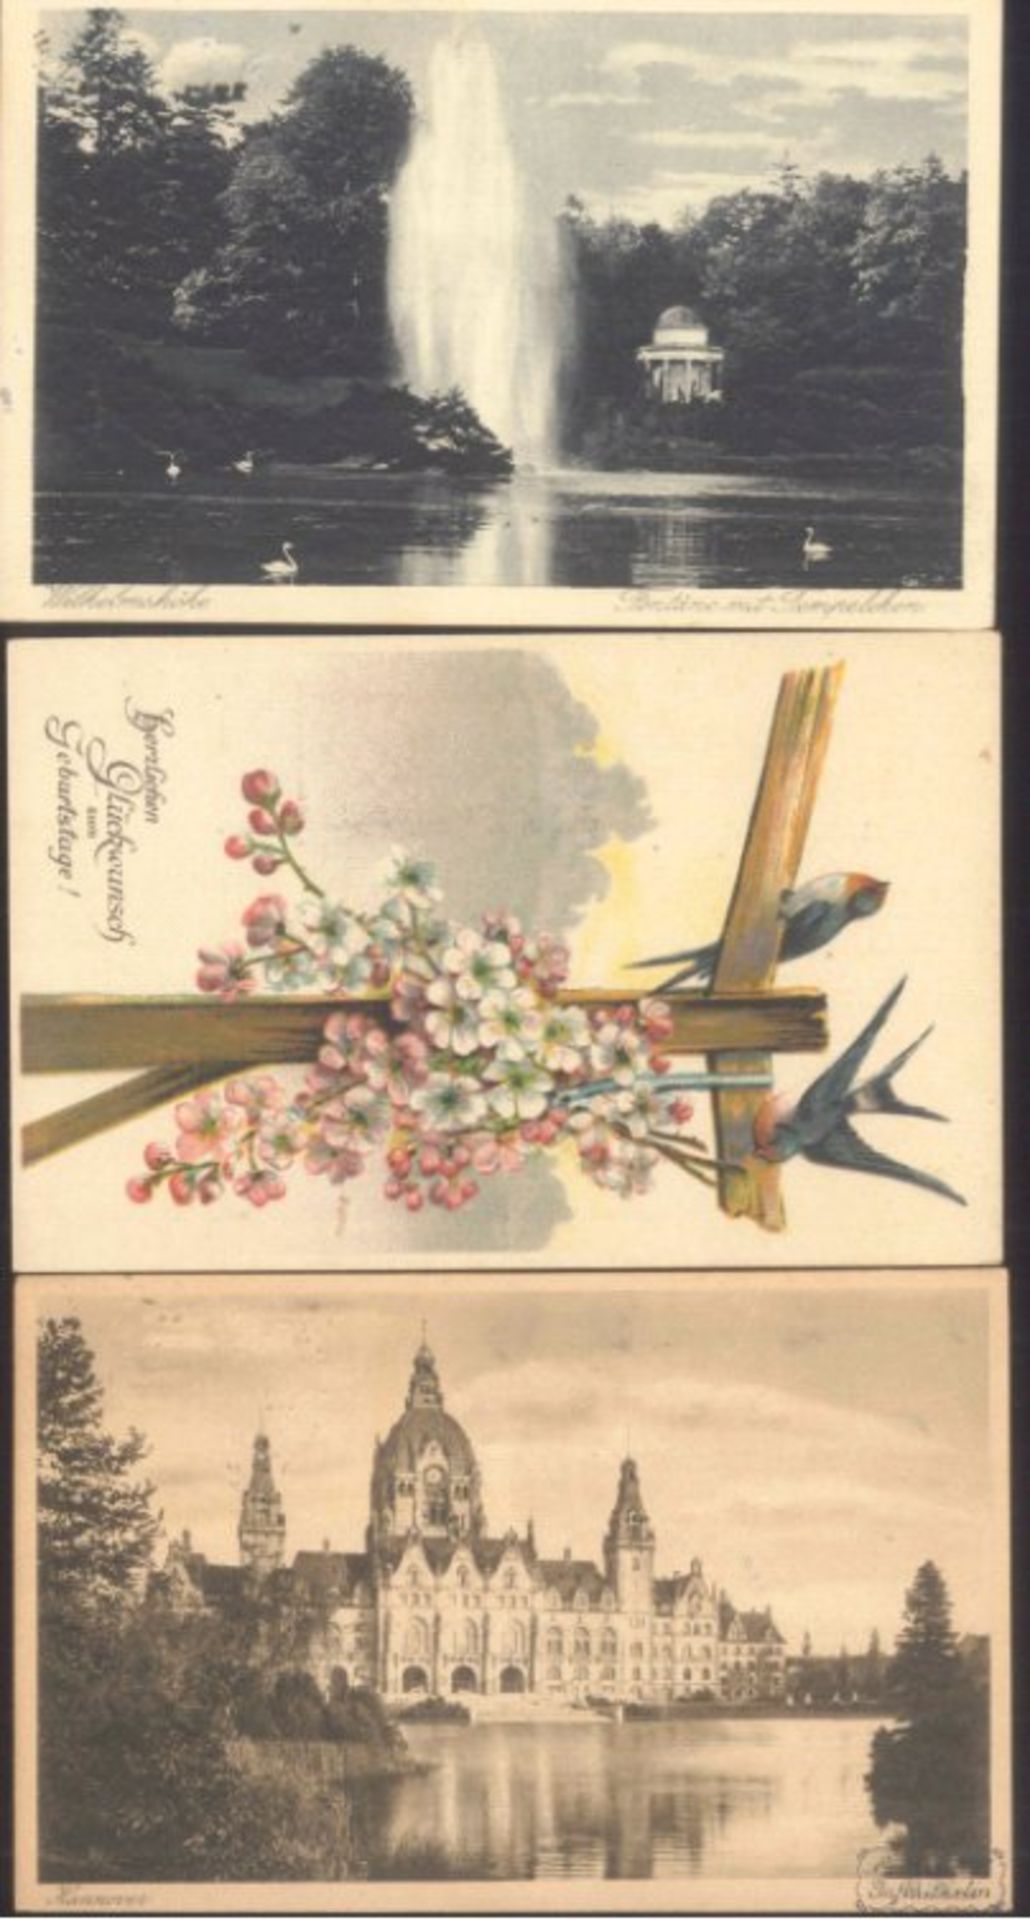 MOTIV SCHIFFE,SCHIFFBAU,SCHIFFSINGENEUR - KLINDWORT 19233 gelaufene Karten an den bekannten - Image 2 of 2